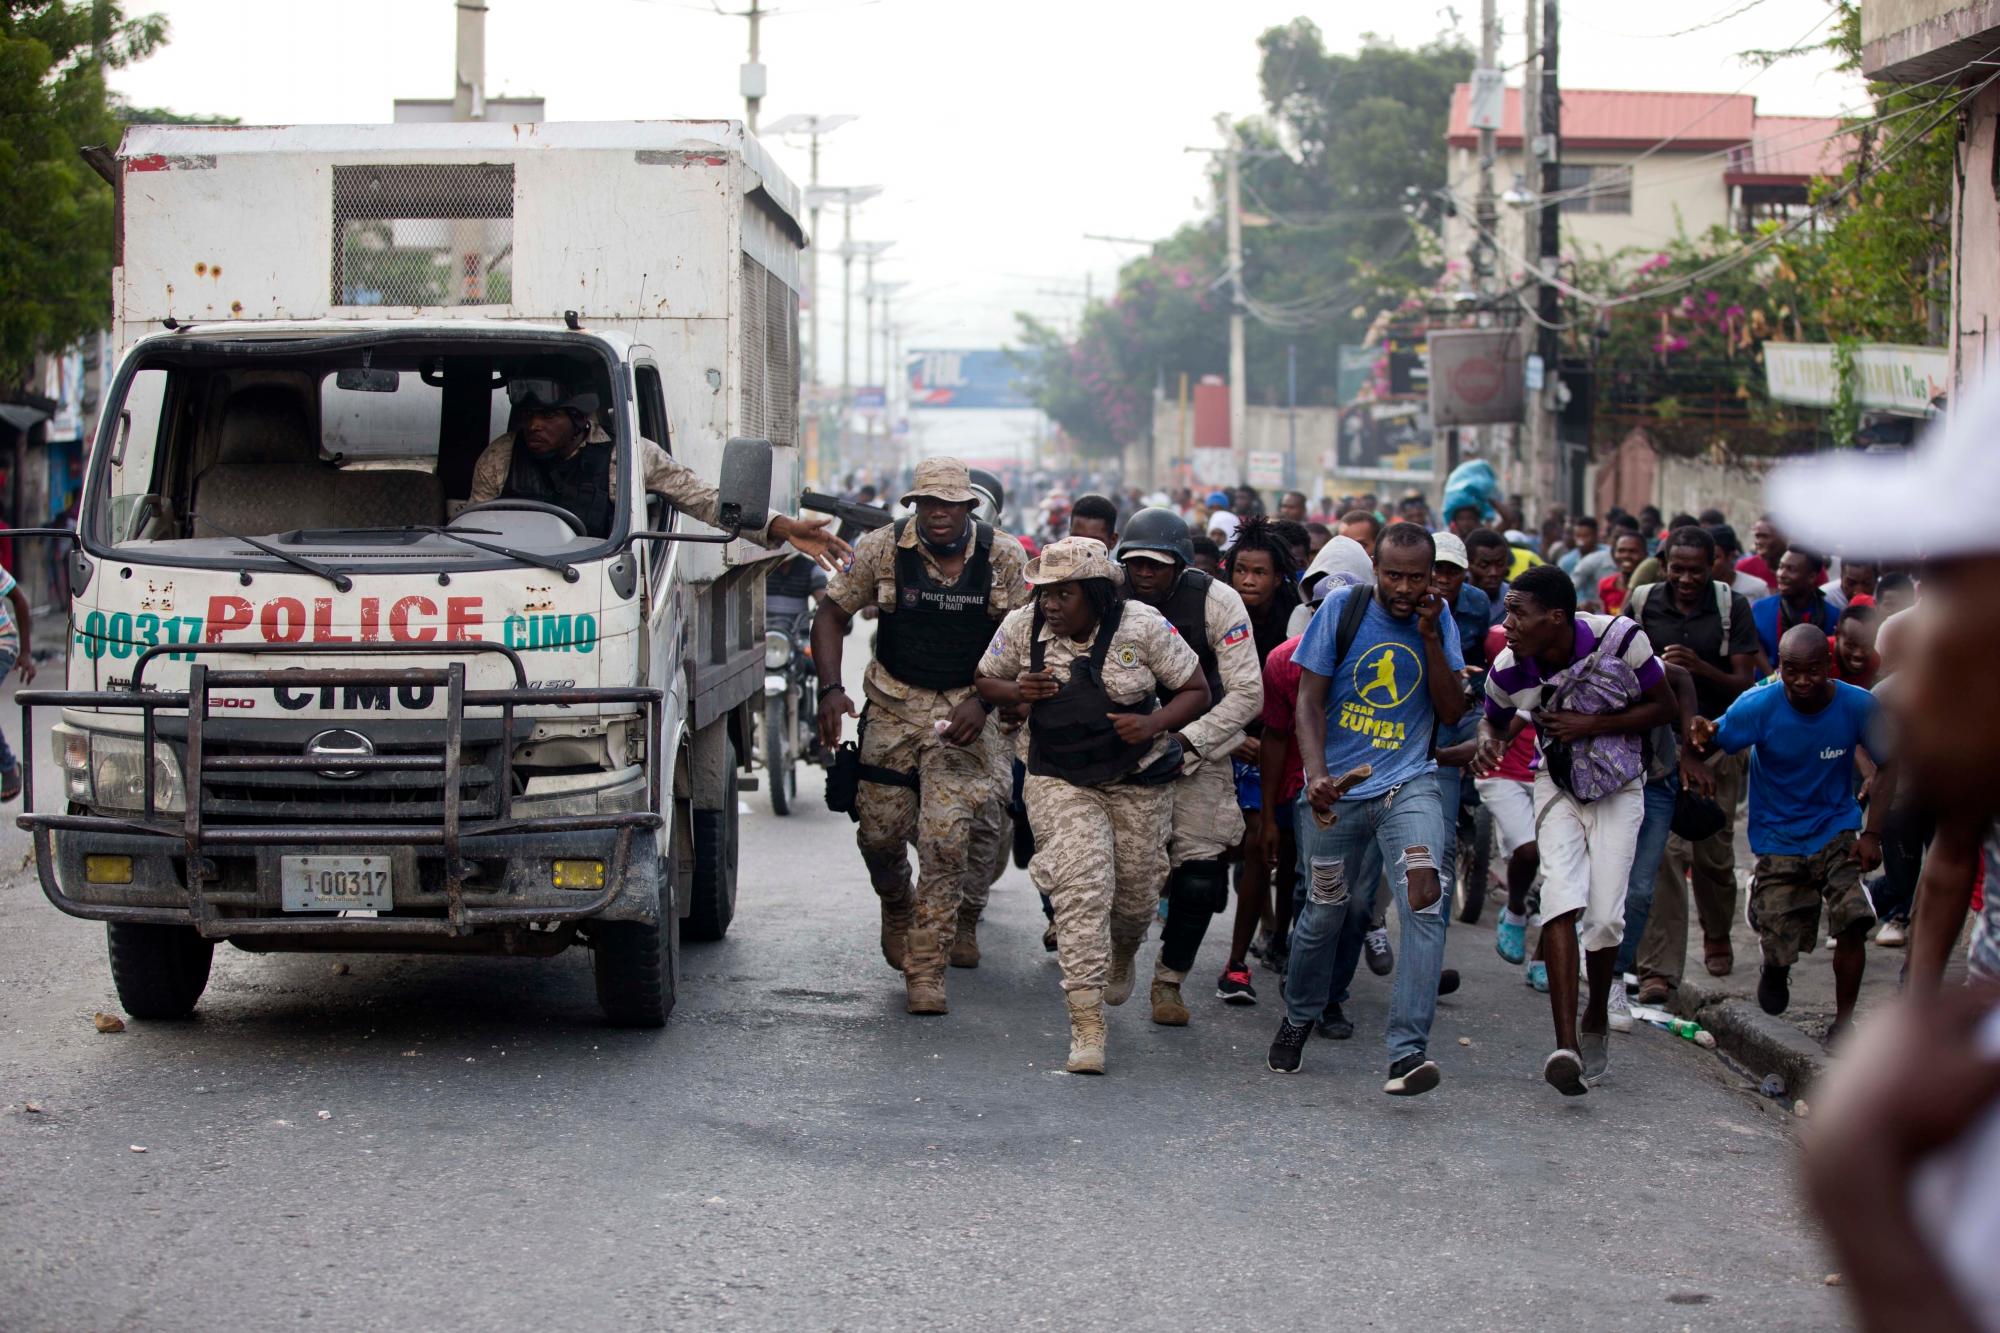 Los oficiales de policía y los manifestantes se refugian detrás de un camión de policía mientras se escuchan disparos durante una protesta para exigir la renuncia del presidente de Haití, Jovenel Moise, en el 216 aniversario de la Batalla de Vertieres en Puerto Príncipe, Haití, el lunes 18 de noviembre de 2019. Al menos cuatro personas fueron baleadas y heridas durante una pequeña protesta en la capital de Haití luego de un discurso del presidente asediado Jovenel Moise. Un periodista local, un oficial de policía y dos manifestantes fueron trasladados rápidamente con heridas de bala aparentes. 